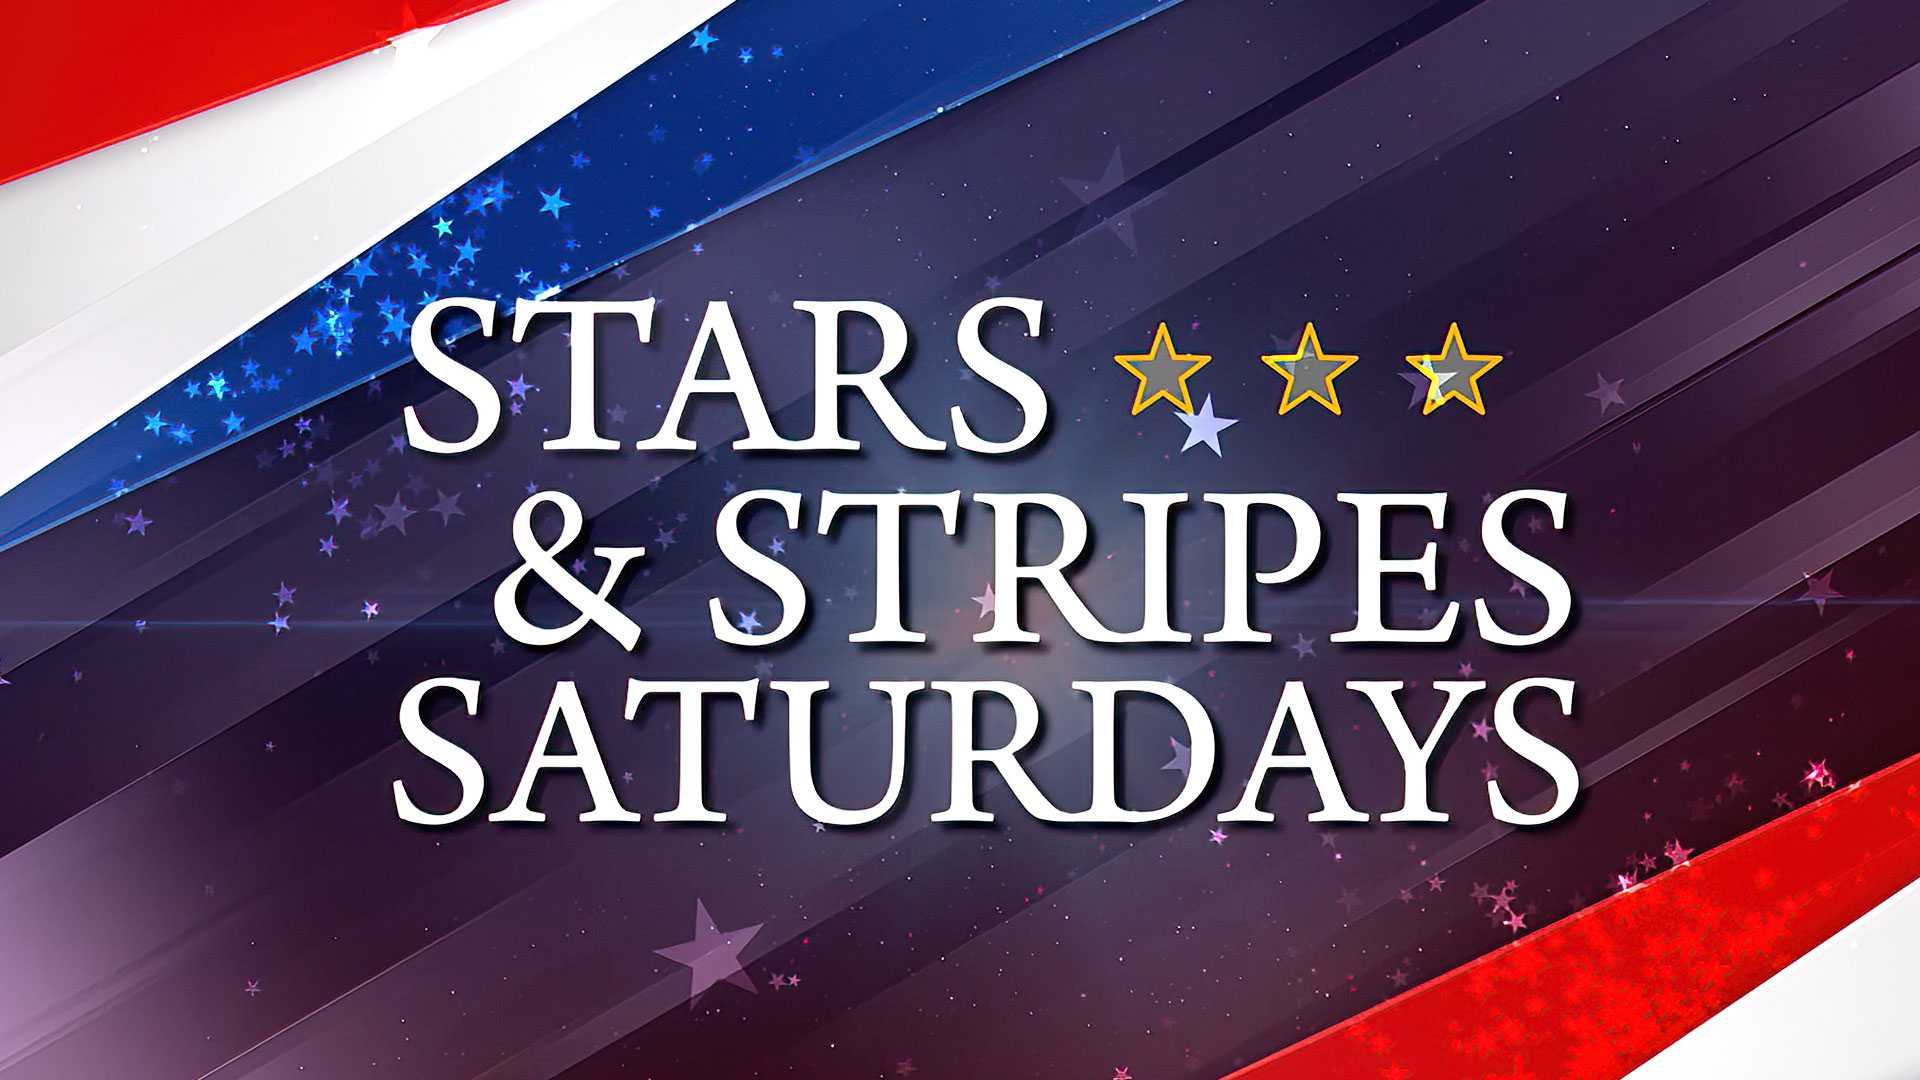 Stars & Stripes Saturday